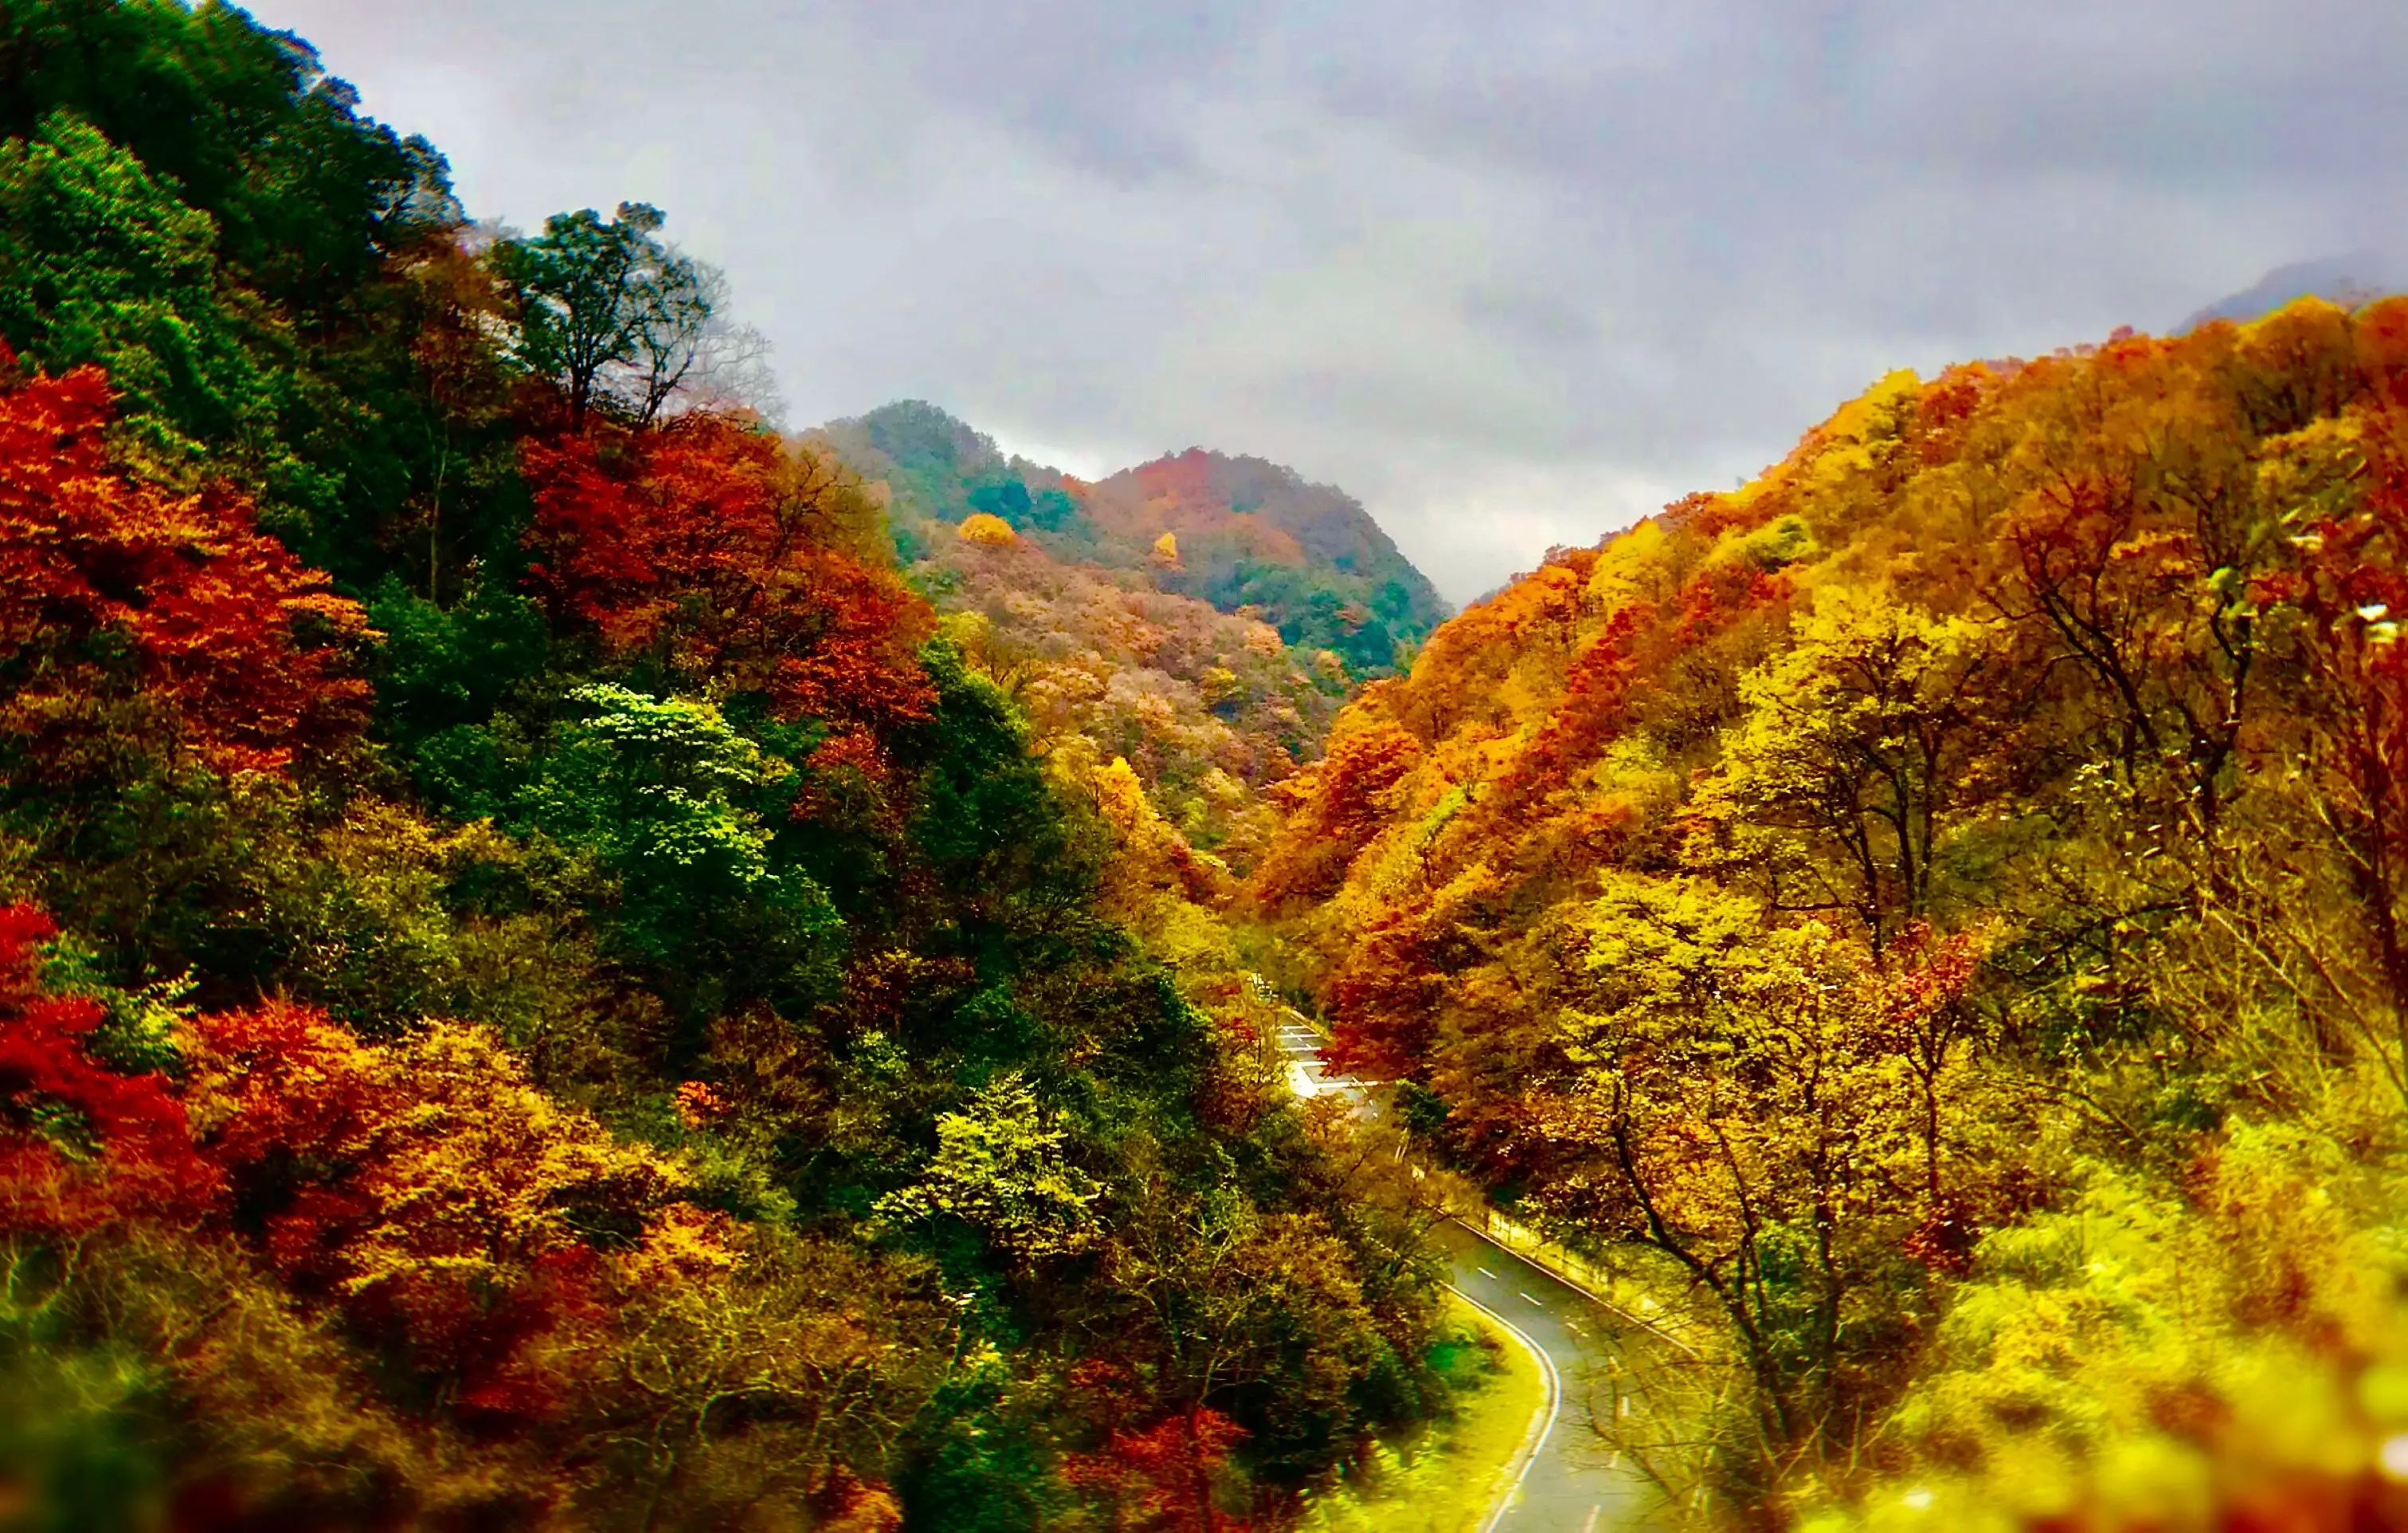 11月最美赏秋胜地:行走在浓烈的秋思画意中,栖霞山光雾山都不错